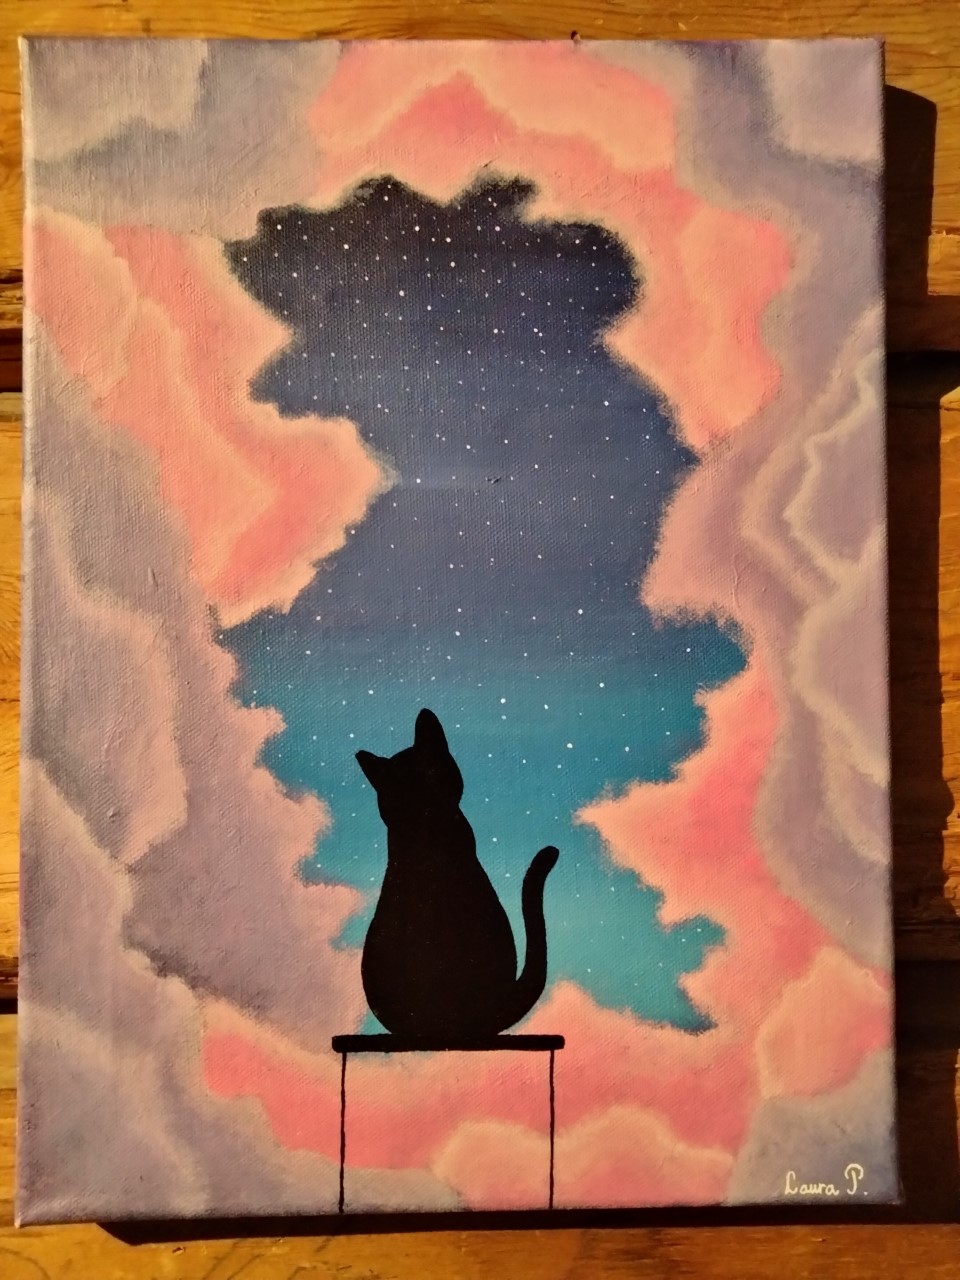 Taideteoksessa musta kissaa esittävä siluetti katsoo yötaivasta. Taivas on kuvassa repeytynyt aukko muutoin punasävyisessä taustassa.